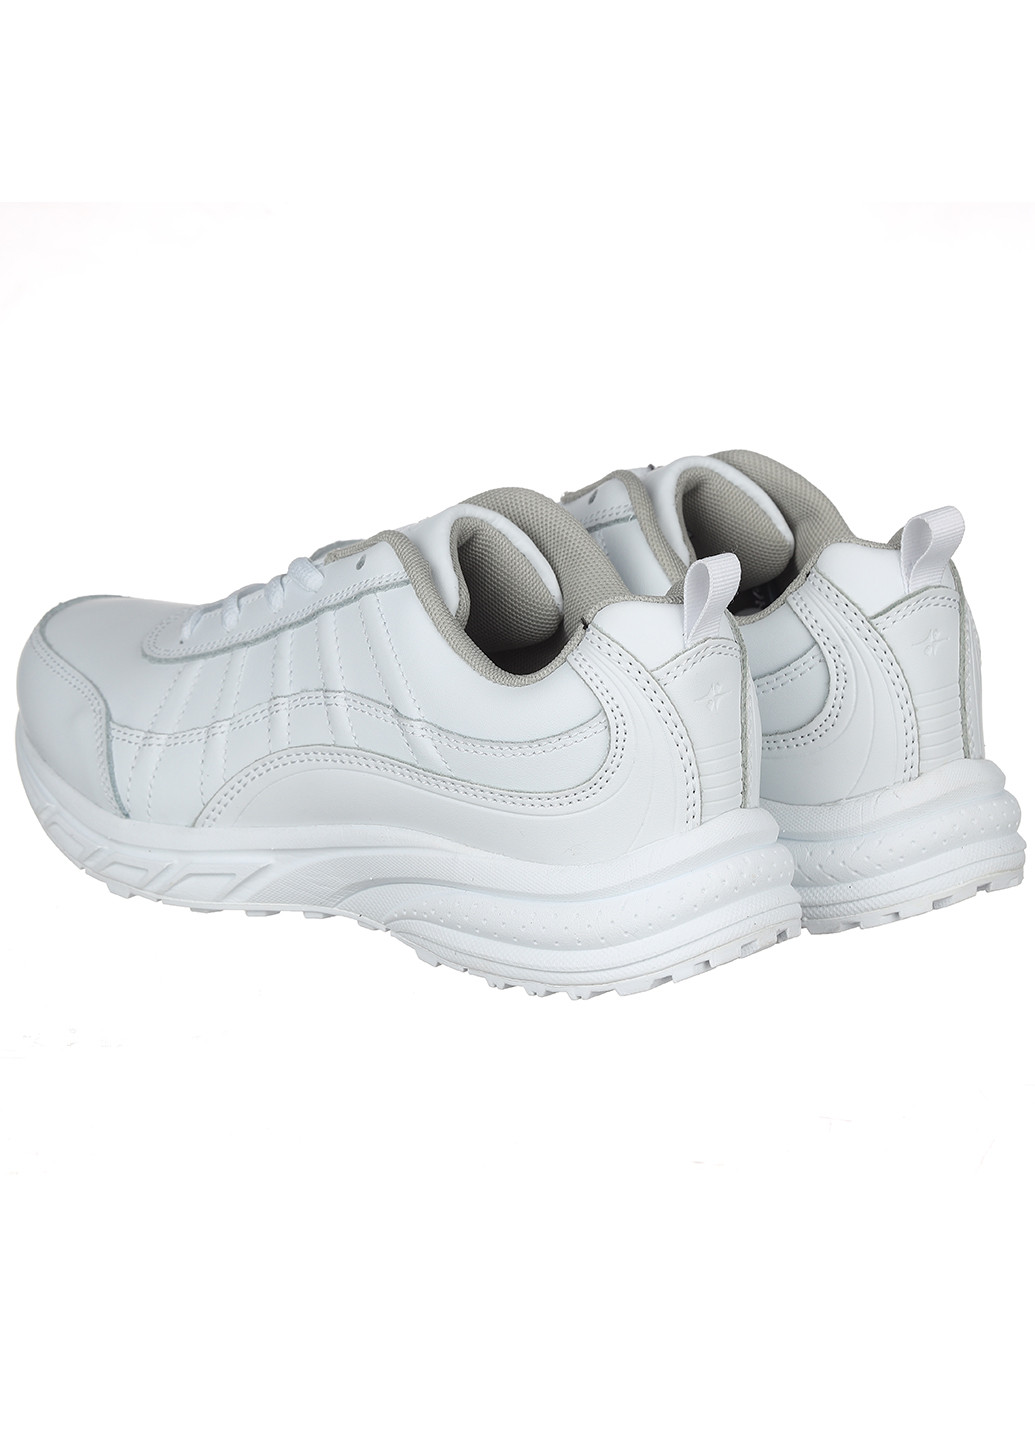 Белые демисезонные женские кожаные кроссовки 739a-2 Bona